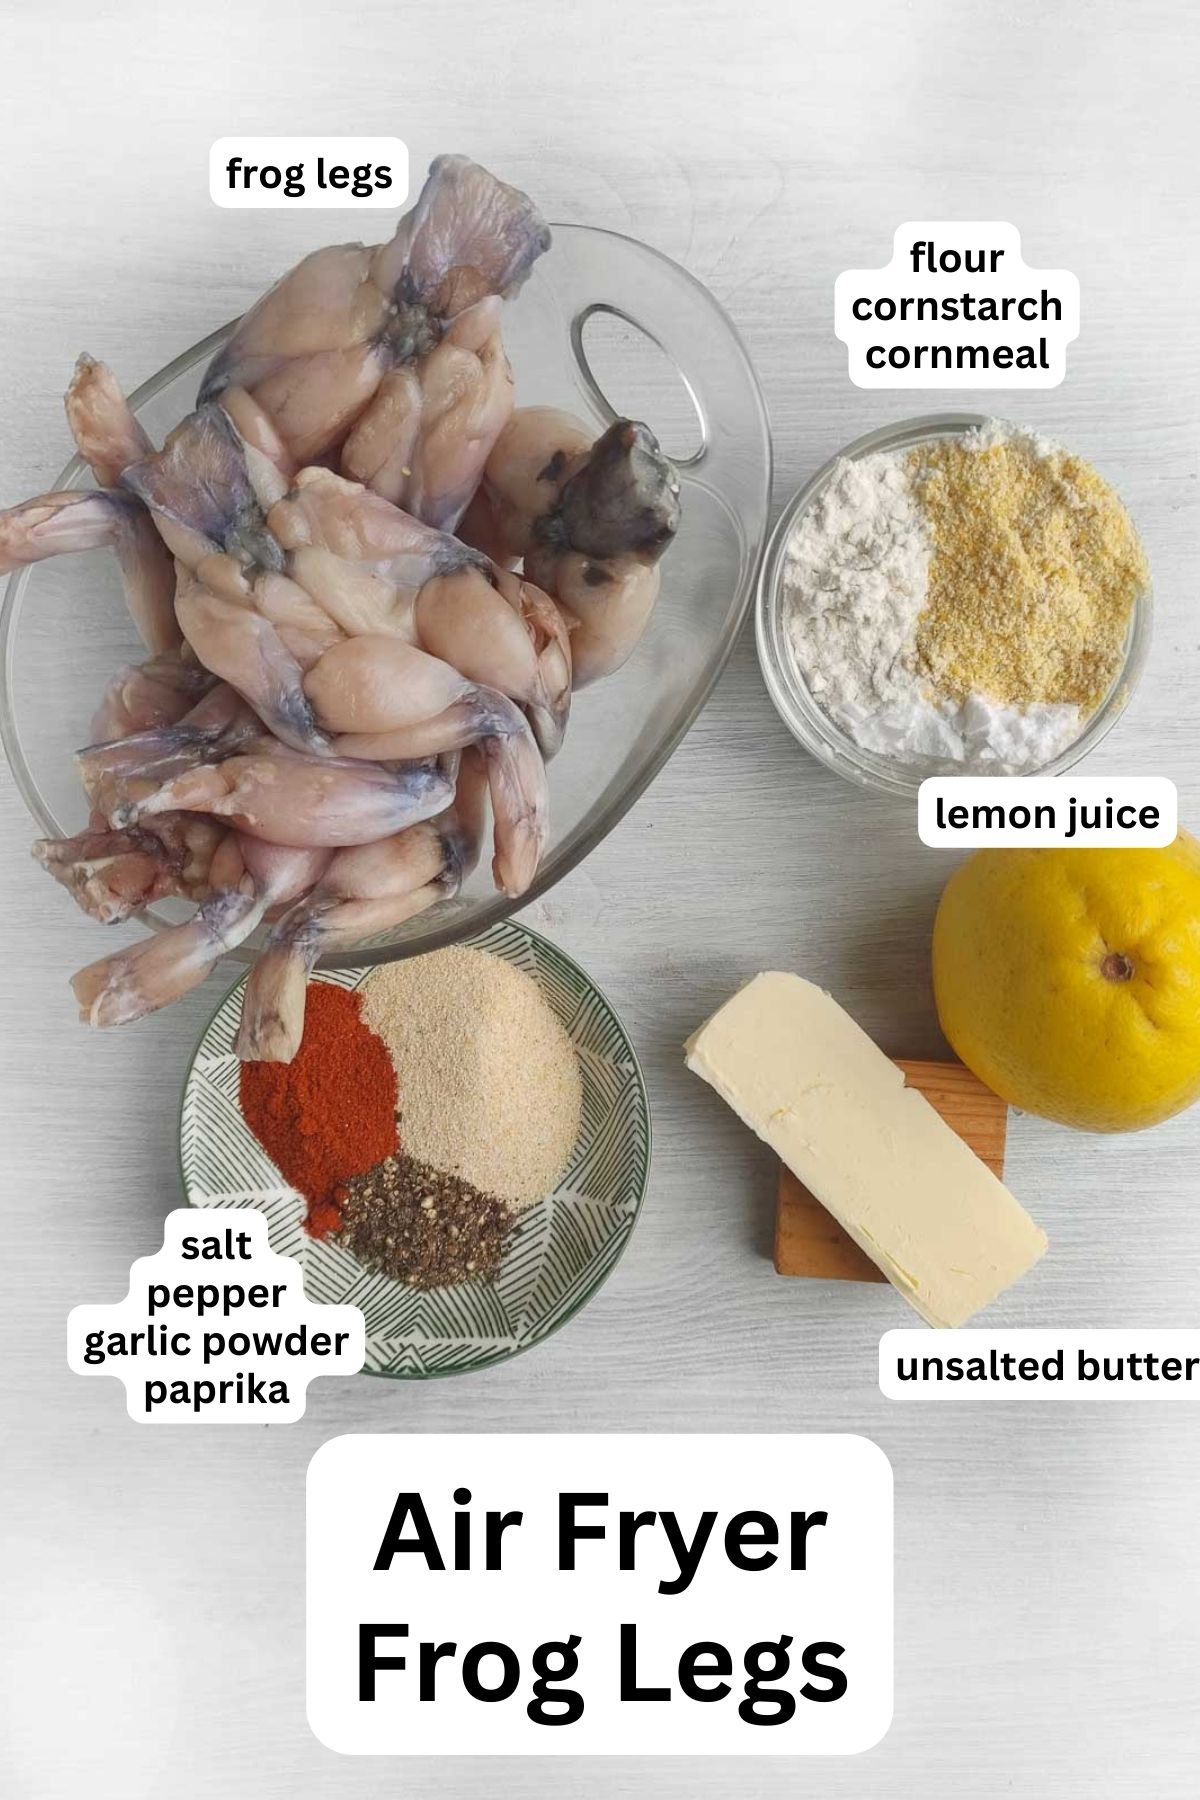 Ingredients to make air fryer frog legs